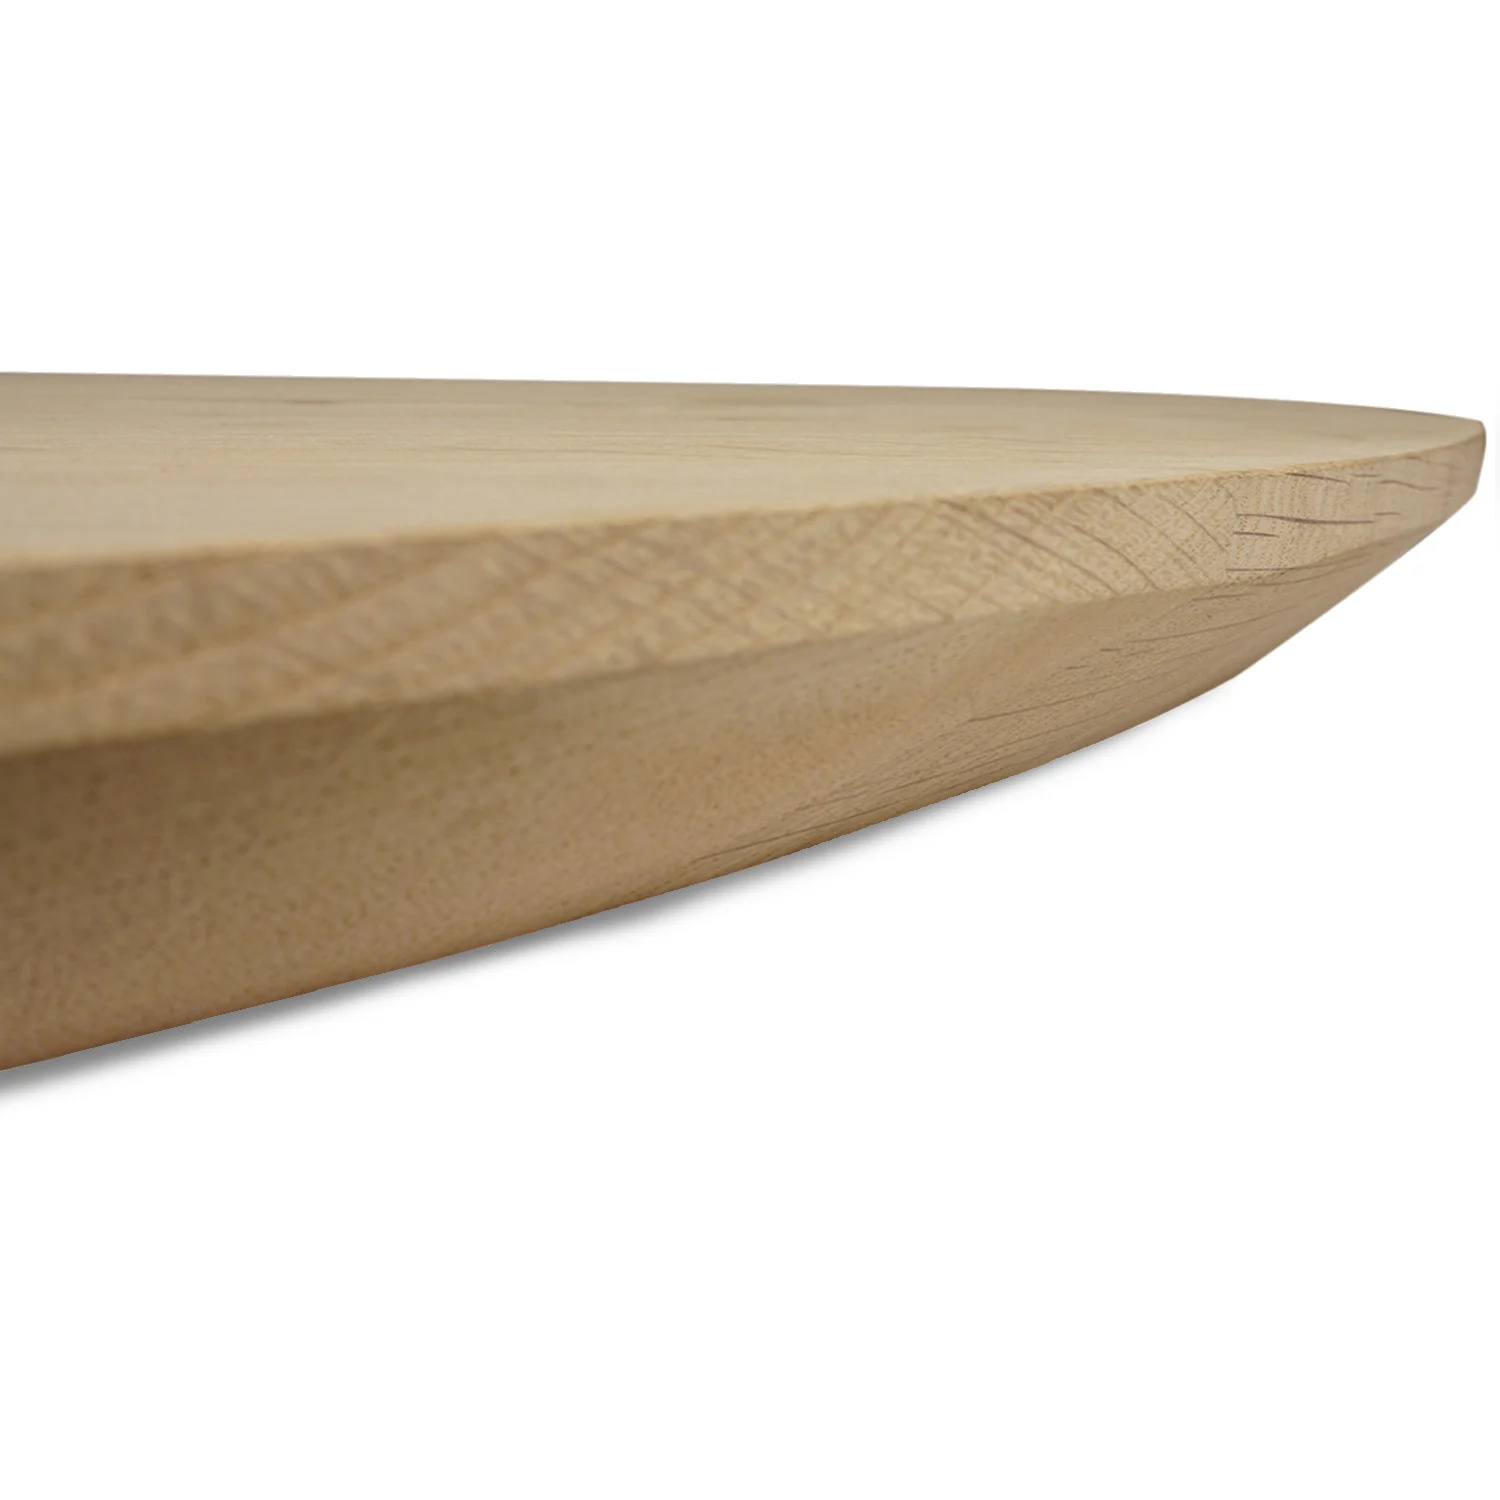  Tischplatte Eiche rund nach Maß - 5 cm dick (2-lagig) - Eichenholz A-Qualität - Durchmesser: 30 - 180 cm - Eiche Tischplatte rund massiv - verleimt & künstlich getrocknet (HF 8-12%)